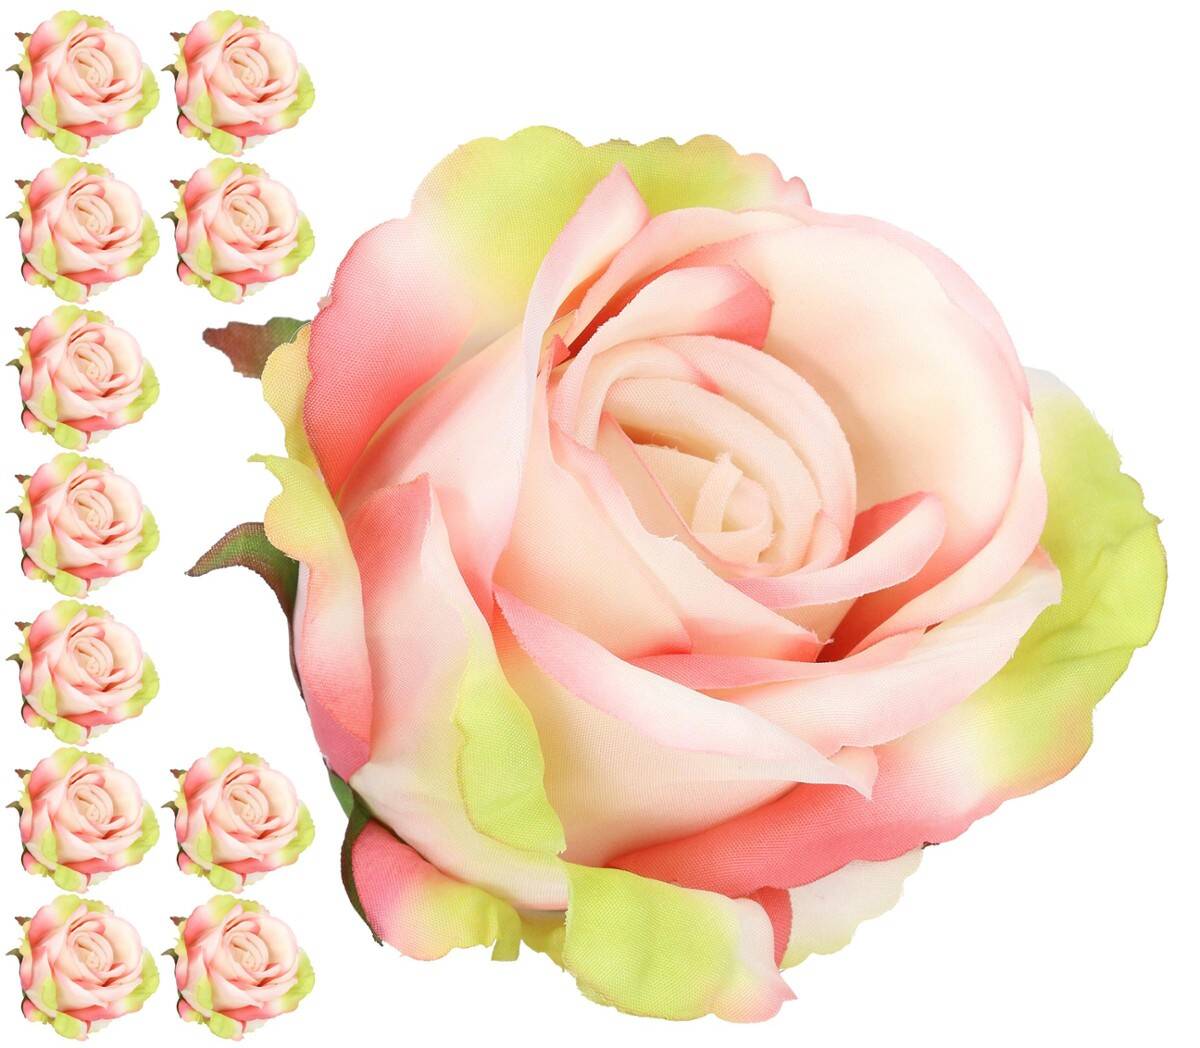 Róża główka wyrobow 8cm 8w. róż krem zie (Zdjęcie 1)